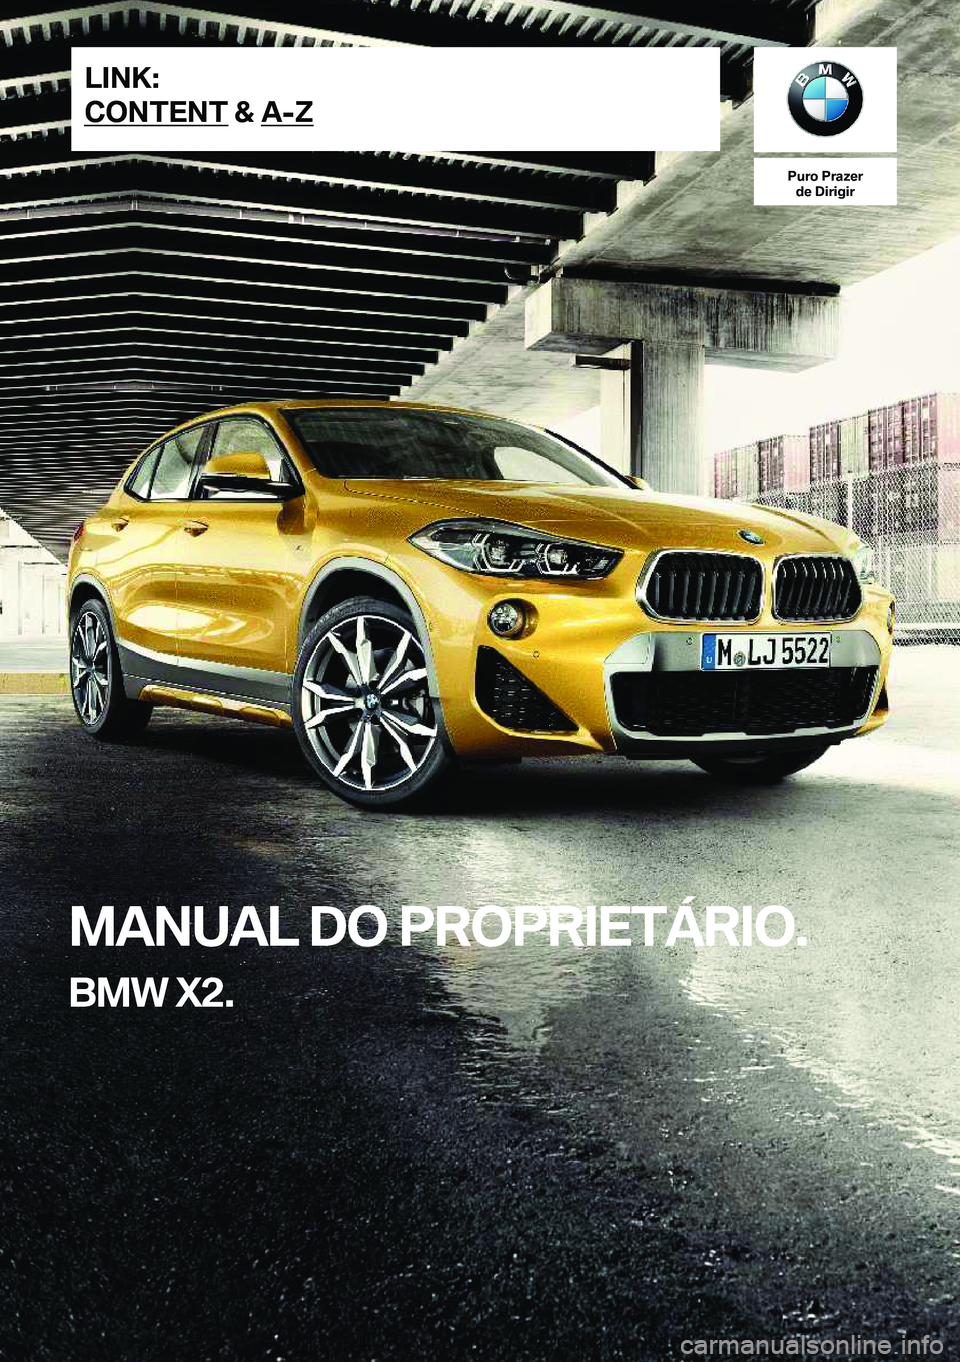 BMW X2 2020  Manual do condutor (in Portuguese) �P�u�r�o��P�r�a�z�e�r�d�e��D�i�r�i�g�i�r
�M�A�N�U�A�L��D�O��P�R�O�P�R�I�E�T�Á�R�I�O�.
�B�M�W��X�2�.�L�I�N�K�:
�C�O�N�T�E�N�T��&��A�-�Z�O�n�l�i�n�e��E�d�i�t�i�o�n��f�o�r��P�a�r�t��n�o�.��0